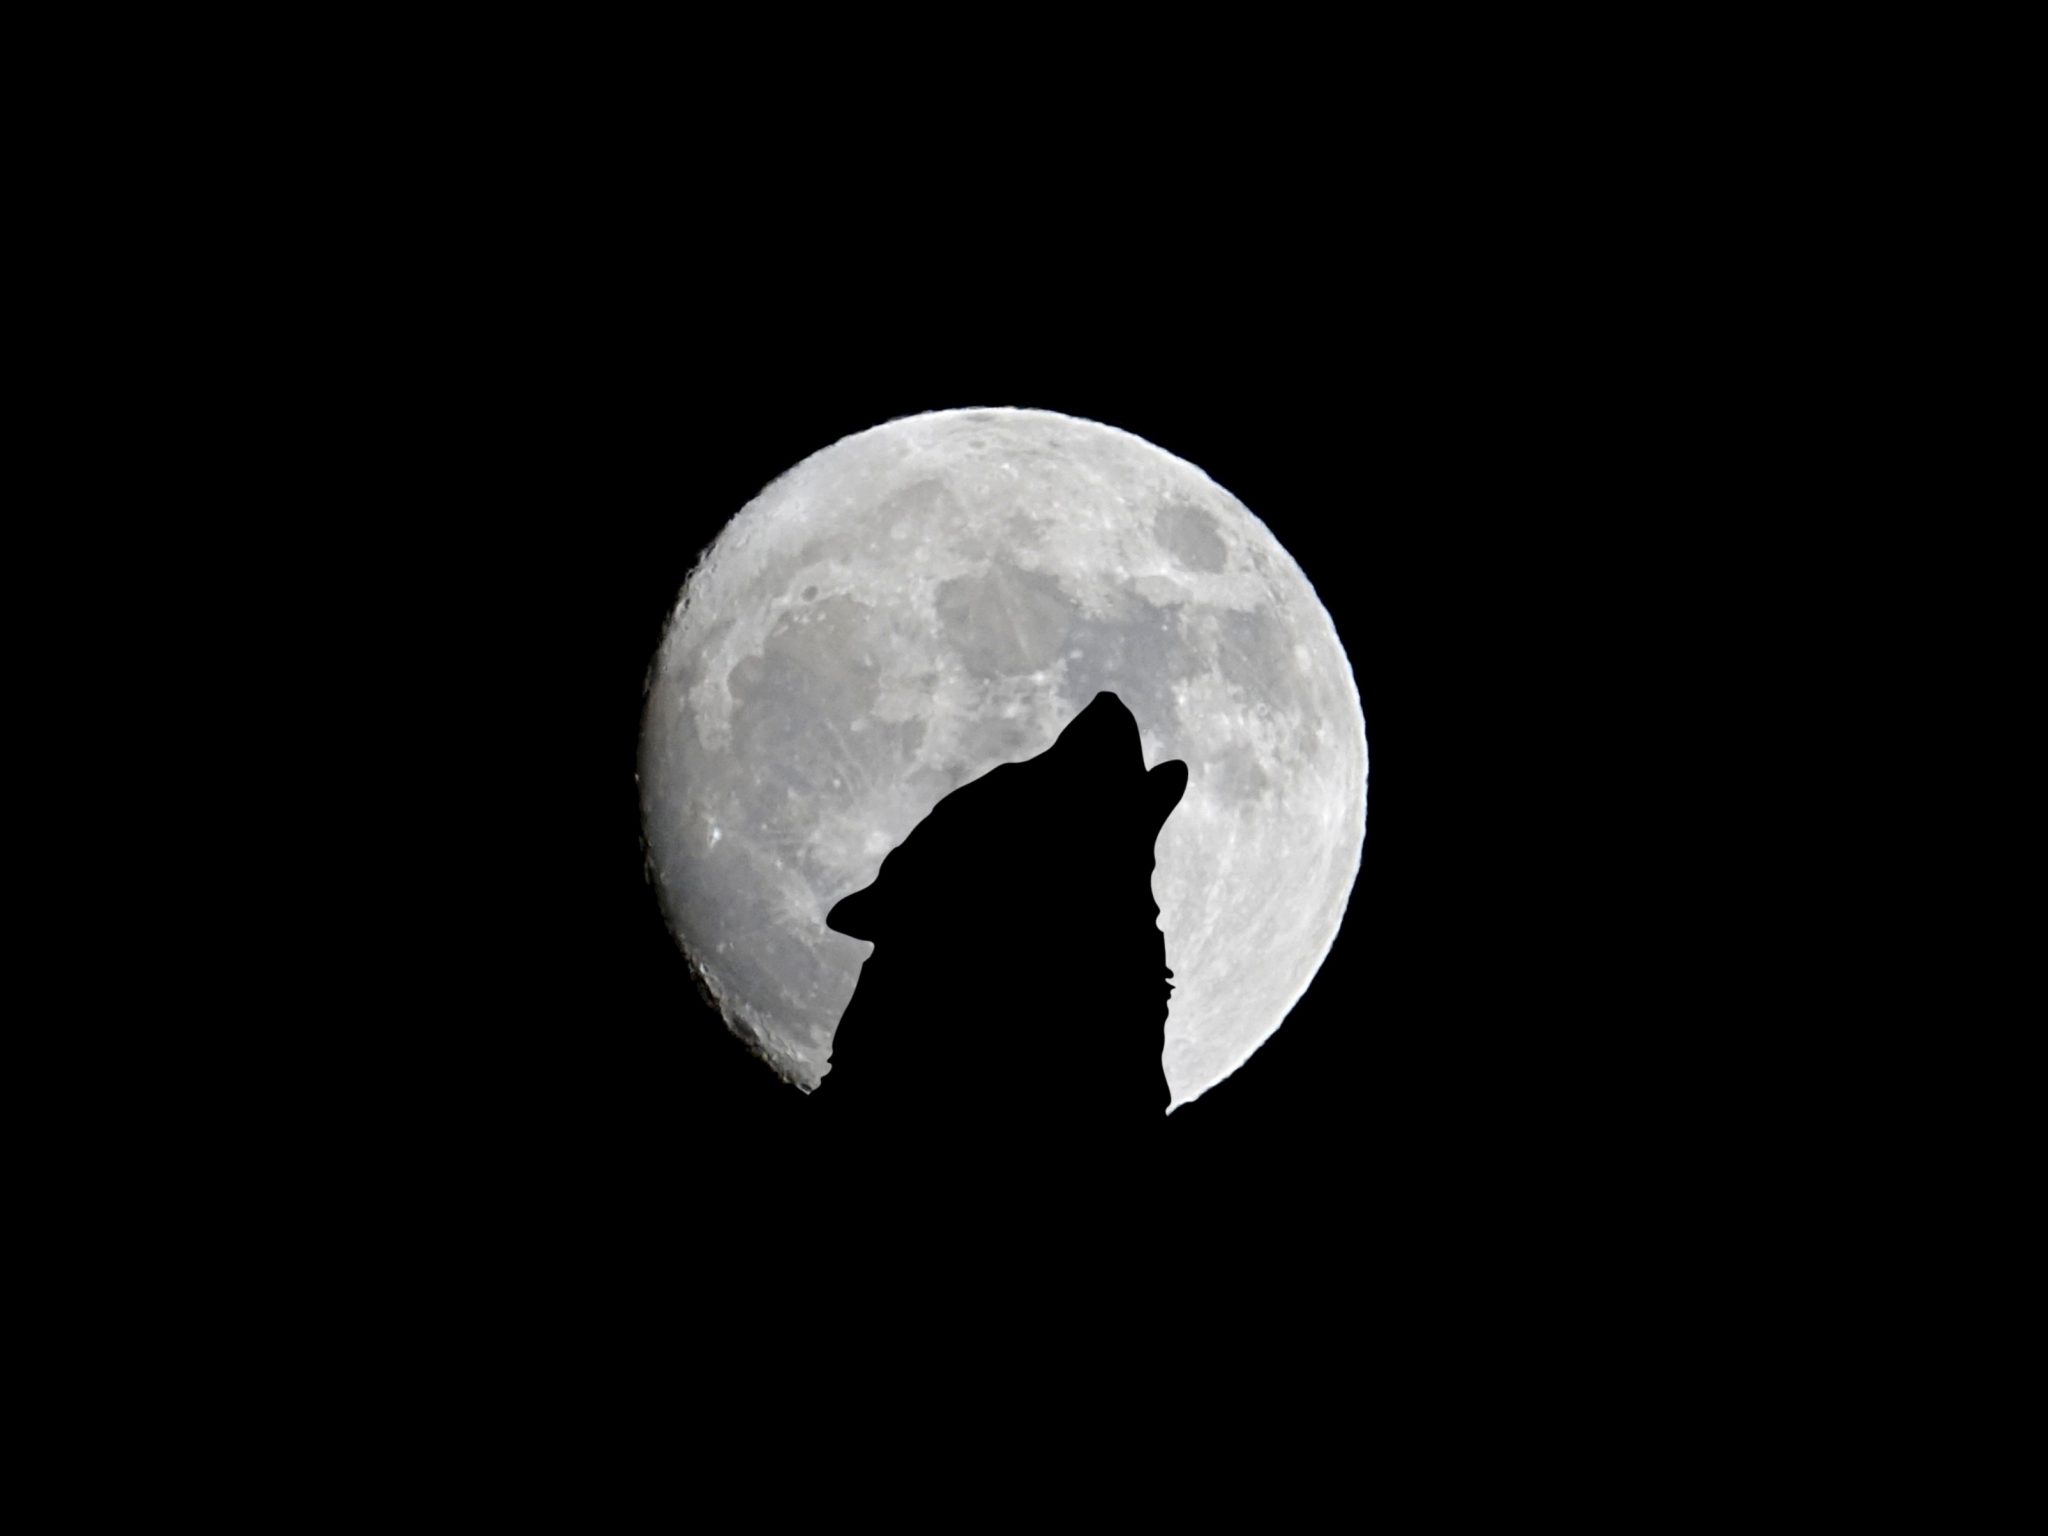 2048x1536 wallpaper Silhouette of Wolf Full Moon Night Darkness iPad Wallpaper 2048x1536 pixels resolution